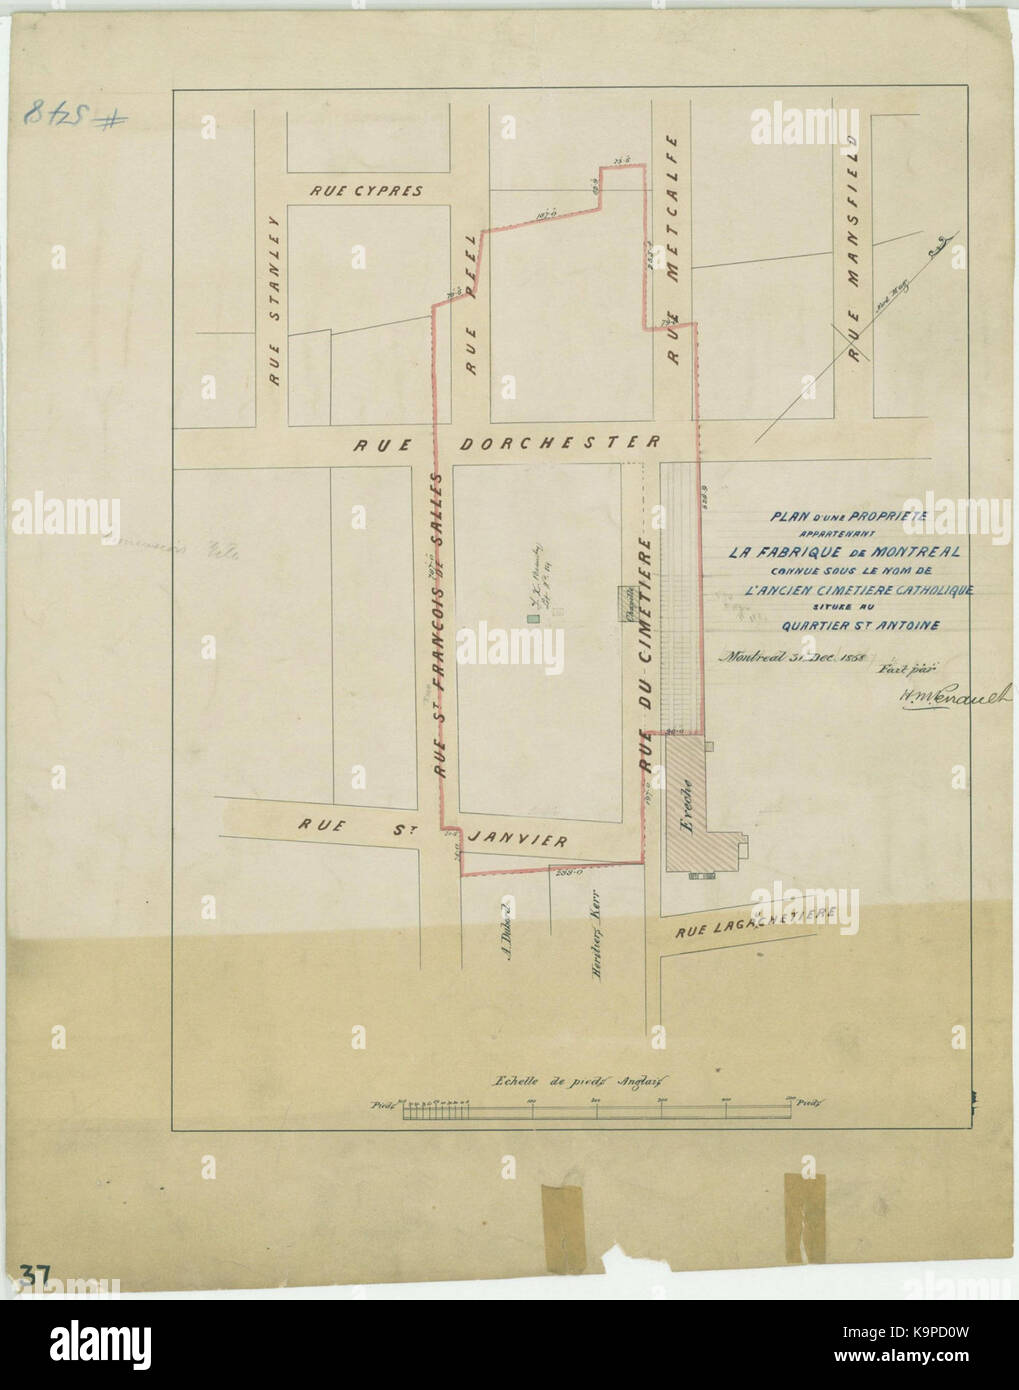 Plan d une propriete, appartenant a la Fabrique de Montreal, connue sous le nom de l ancien cimetiere catholique, situee au quartier St Antoine Stock Photo